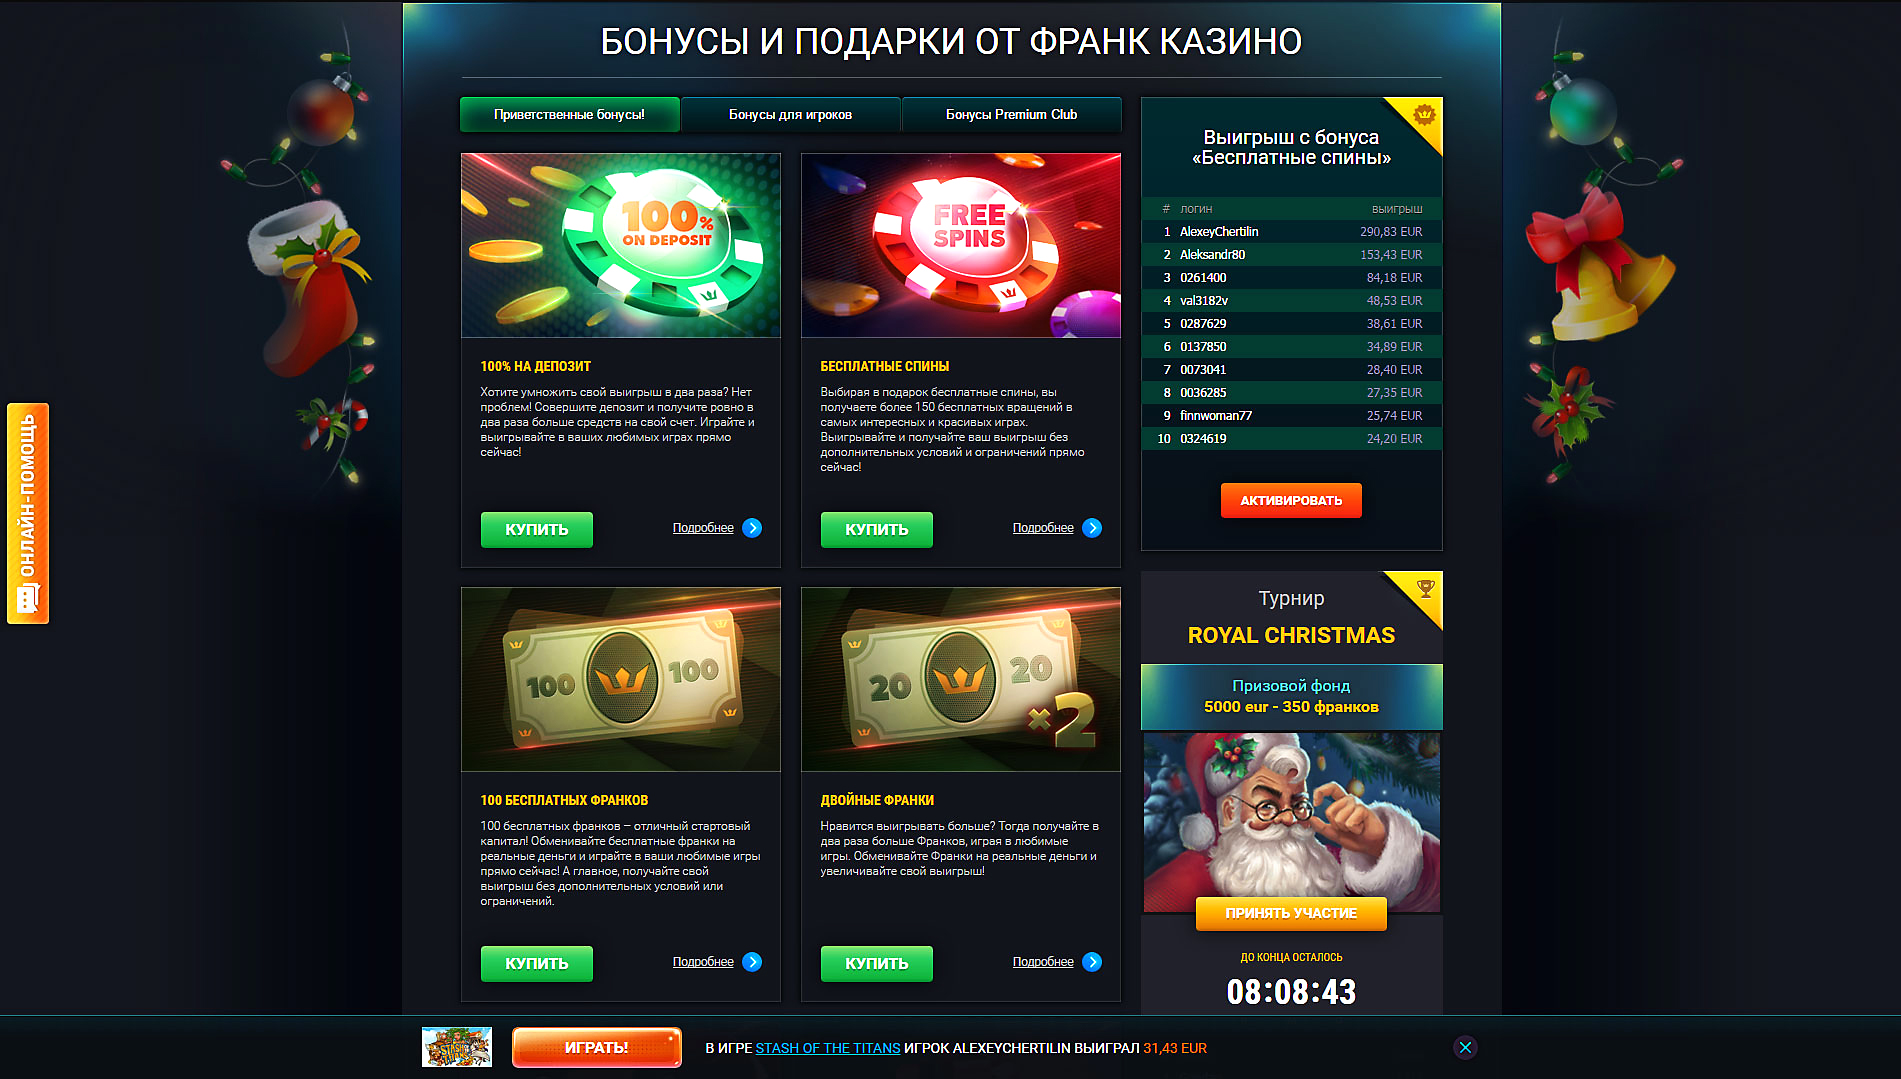 Joycasino рабочее зеркало joy casino org ru. Бонусы Франк казино. Казино Франк бездепозитный бонус. Сайт казино RIOBET. Бонусы в казино Joycasino.